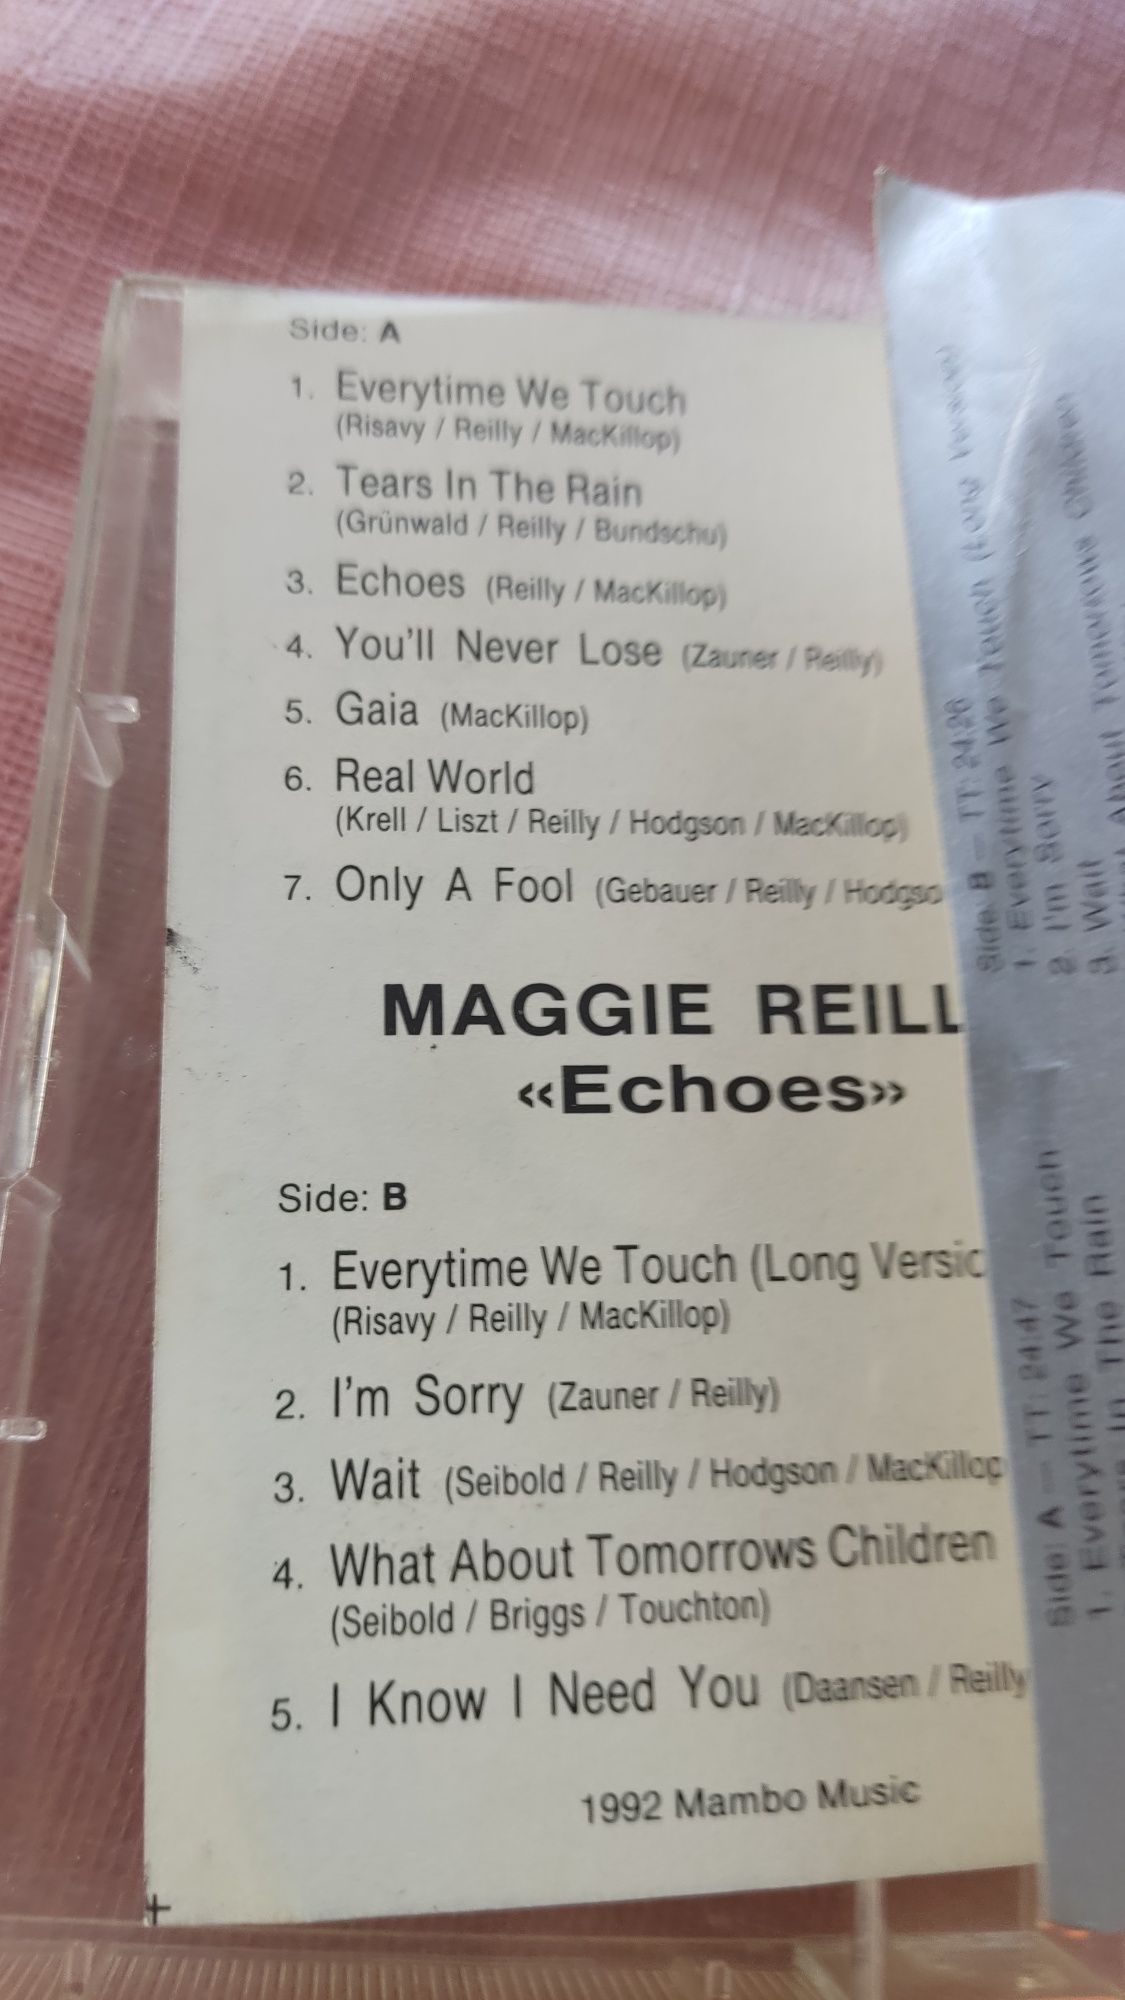 Maggie Reilly Echoes super hit Elbo kaseta